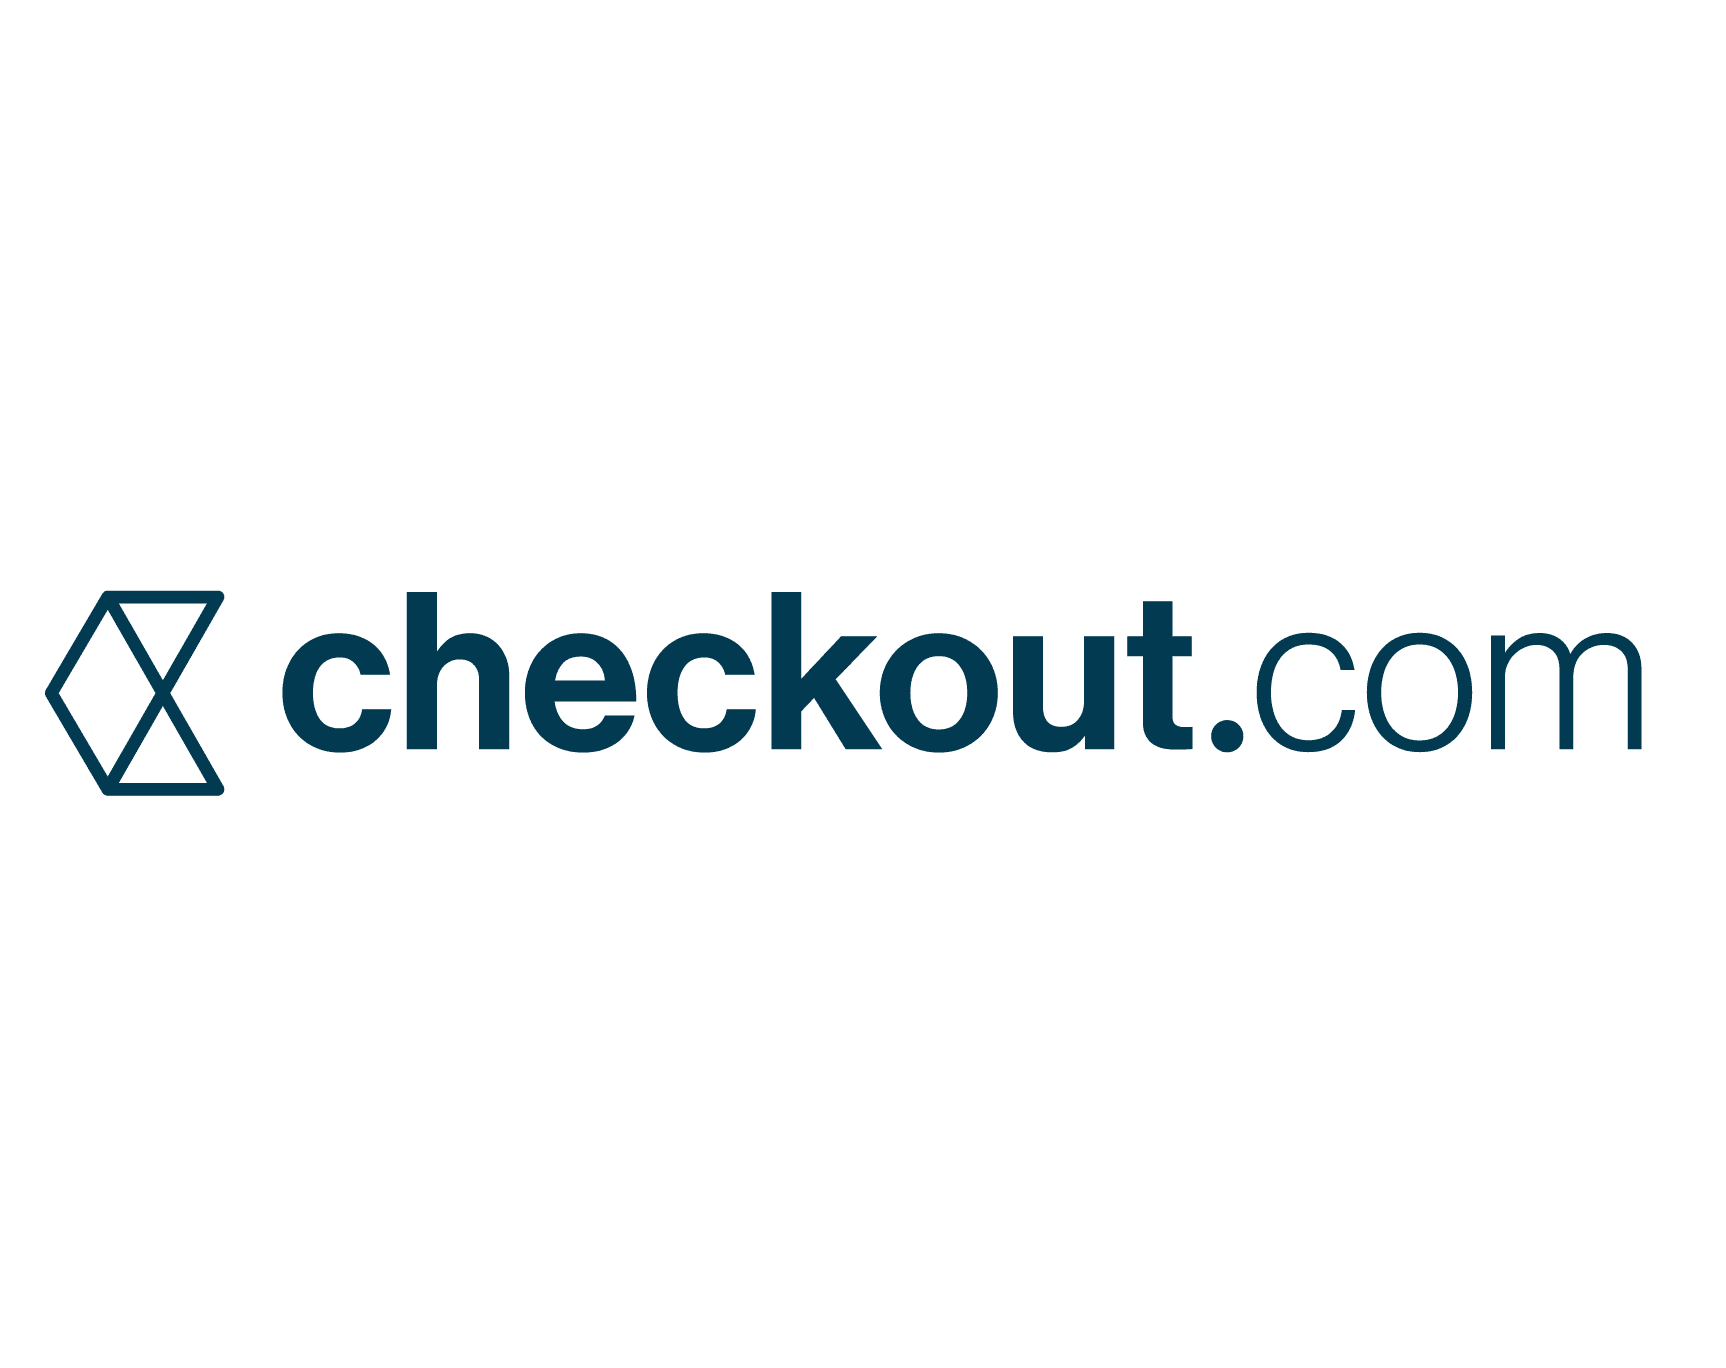 checkout.com logo